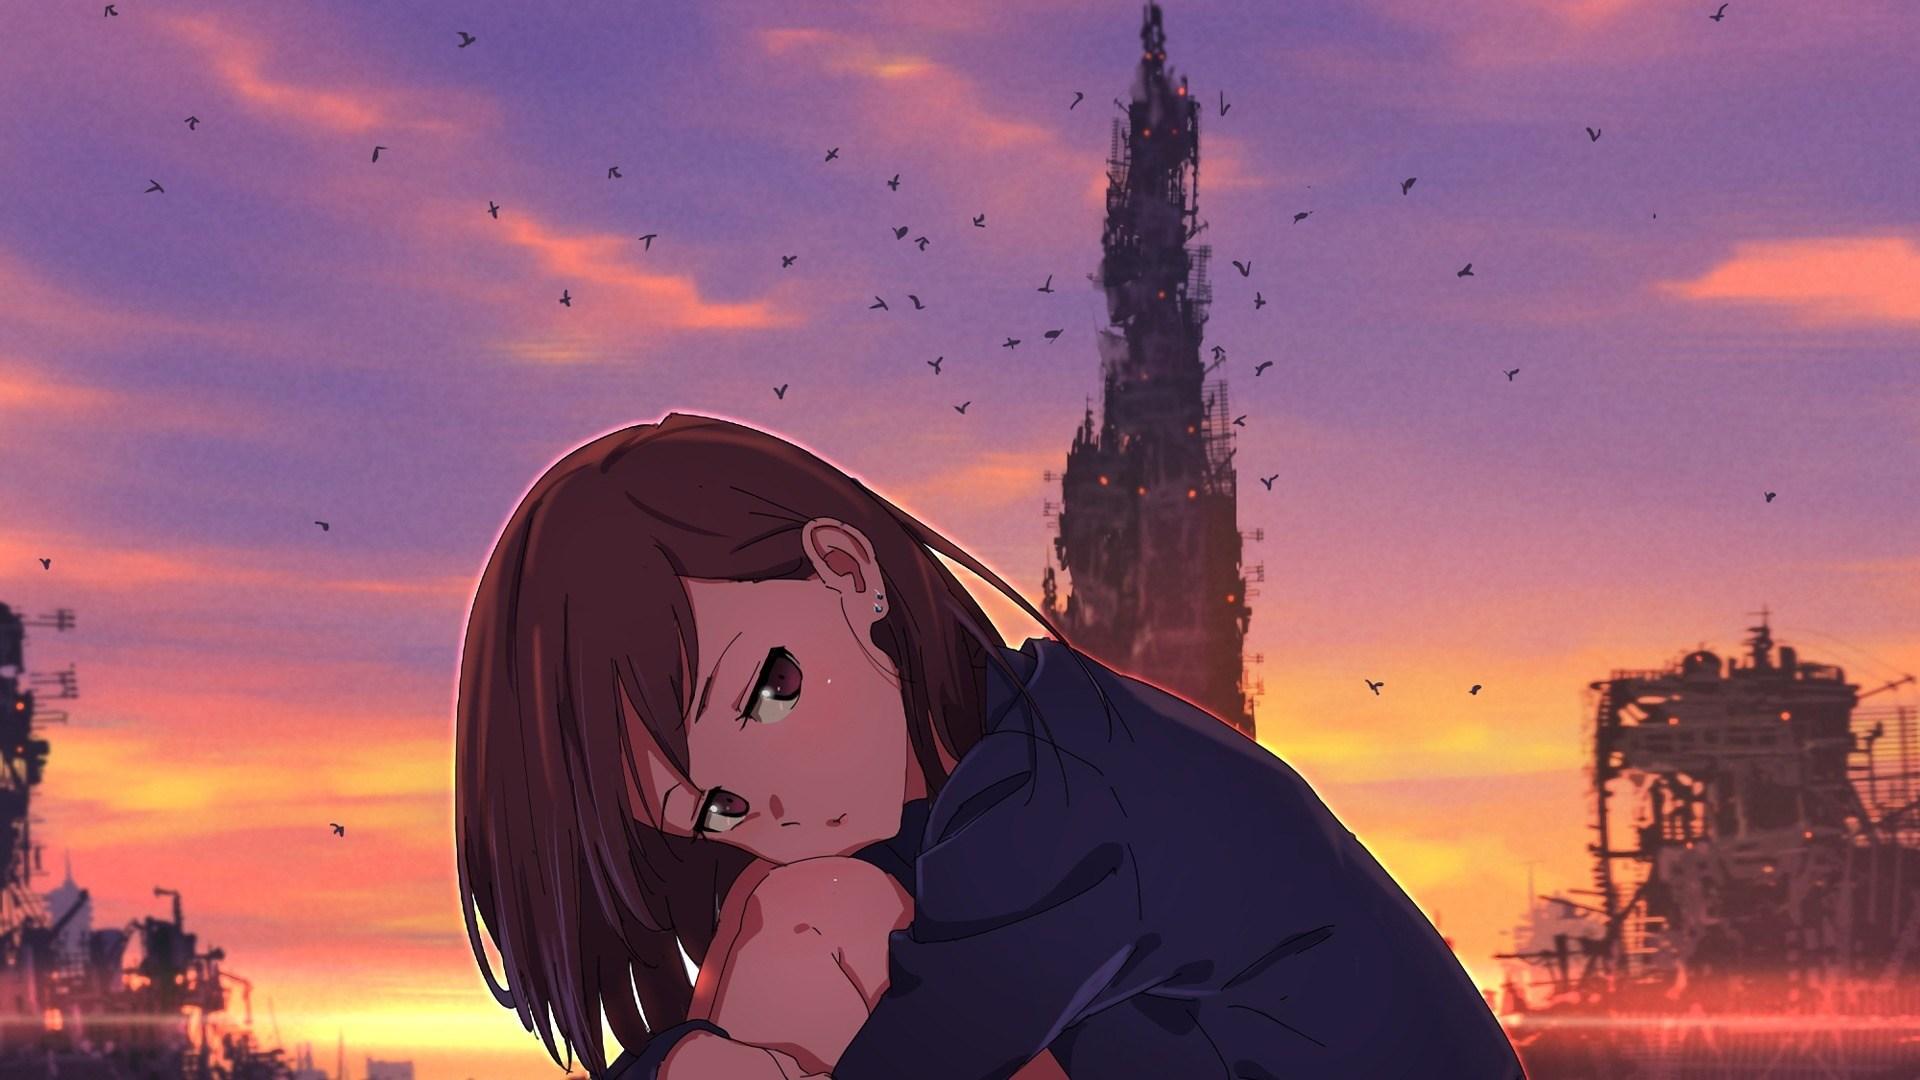 Broken Heart Anime Girl Full Hd Wallpapers